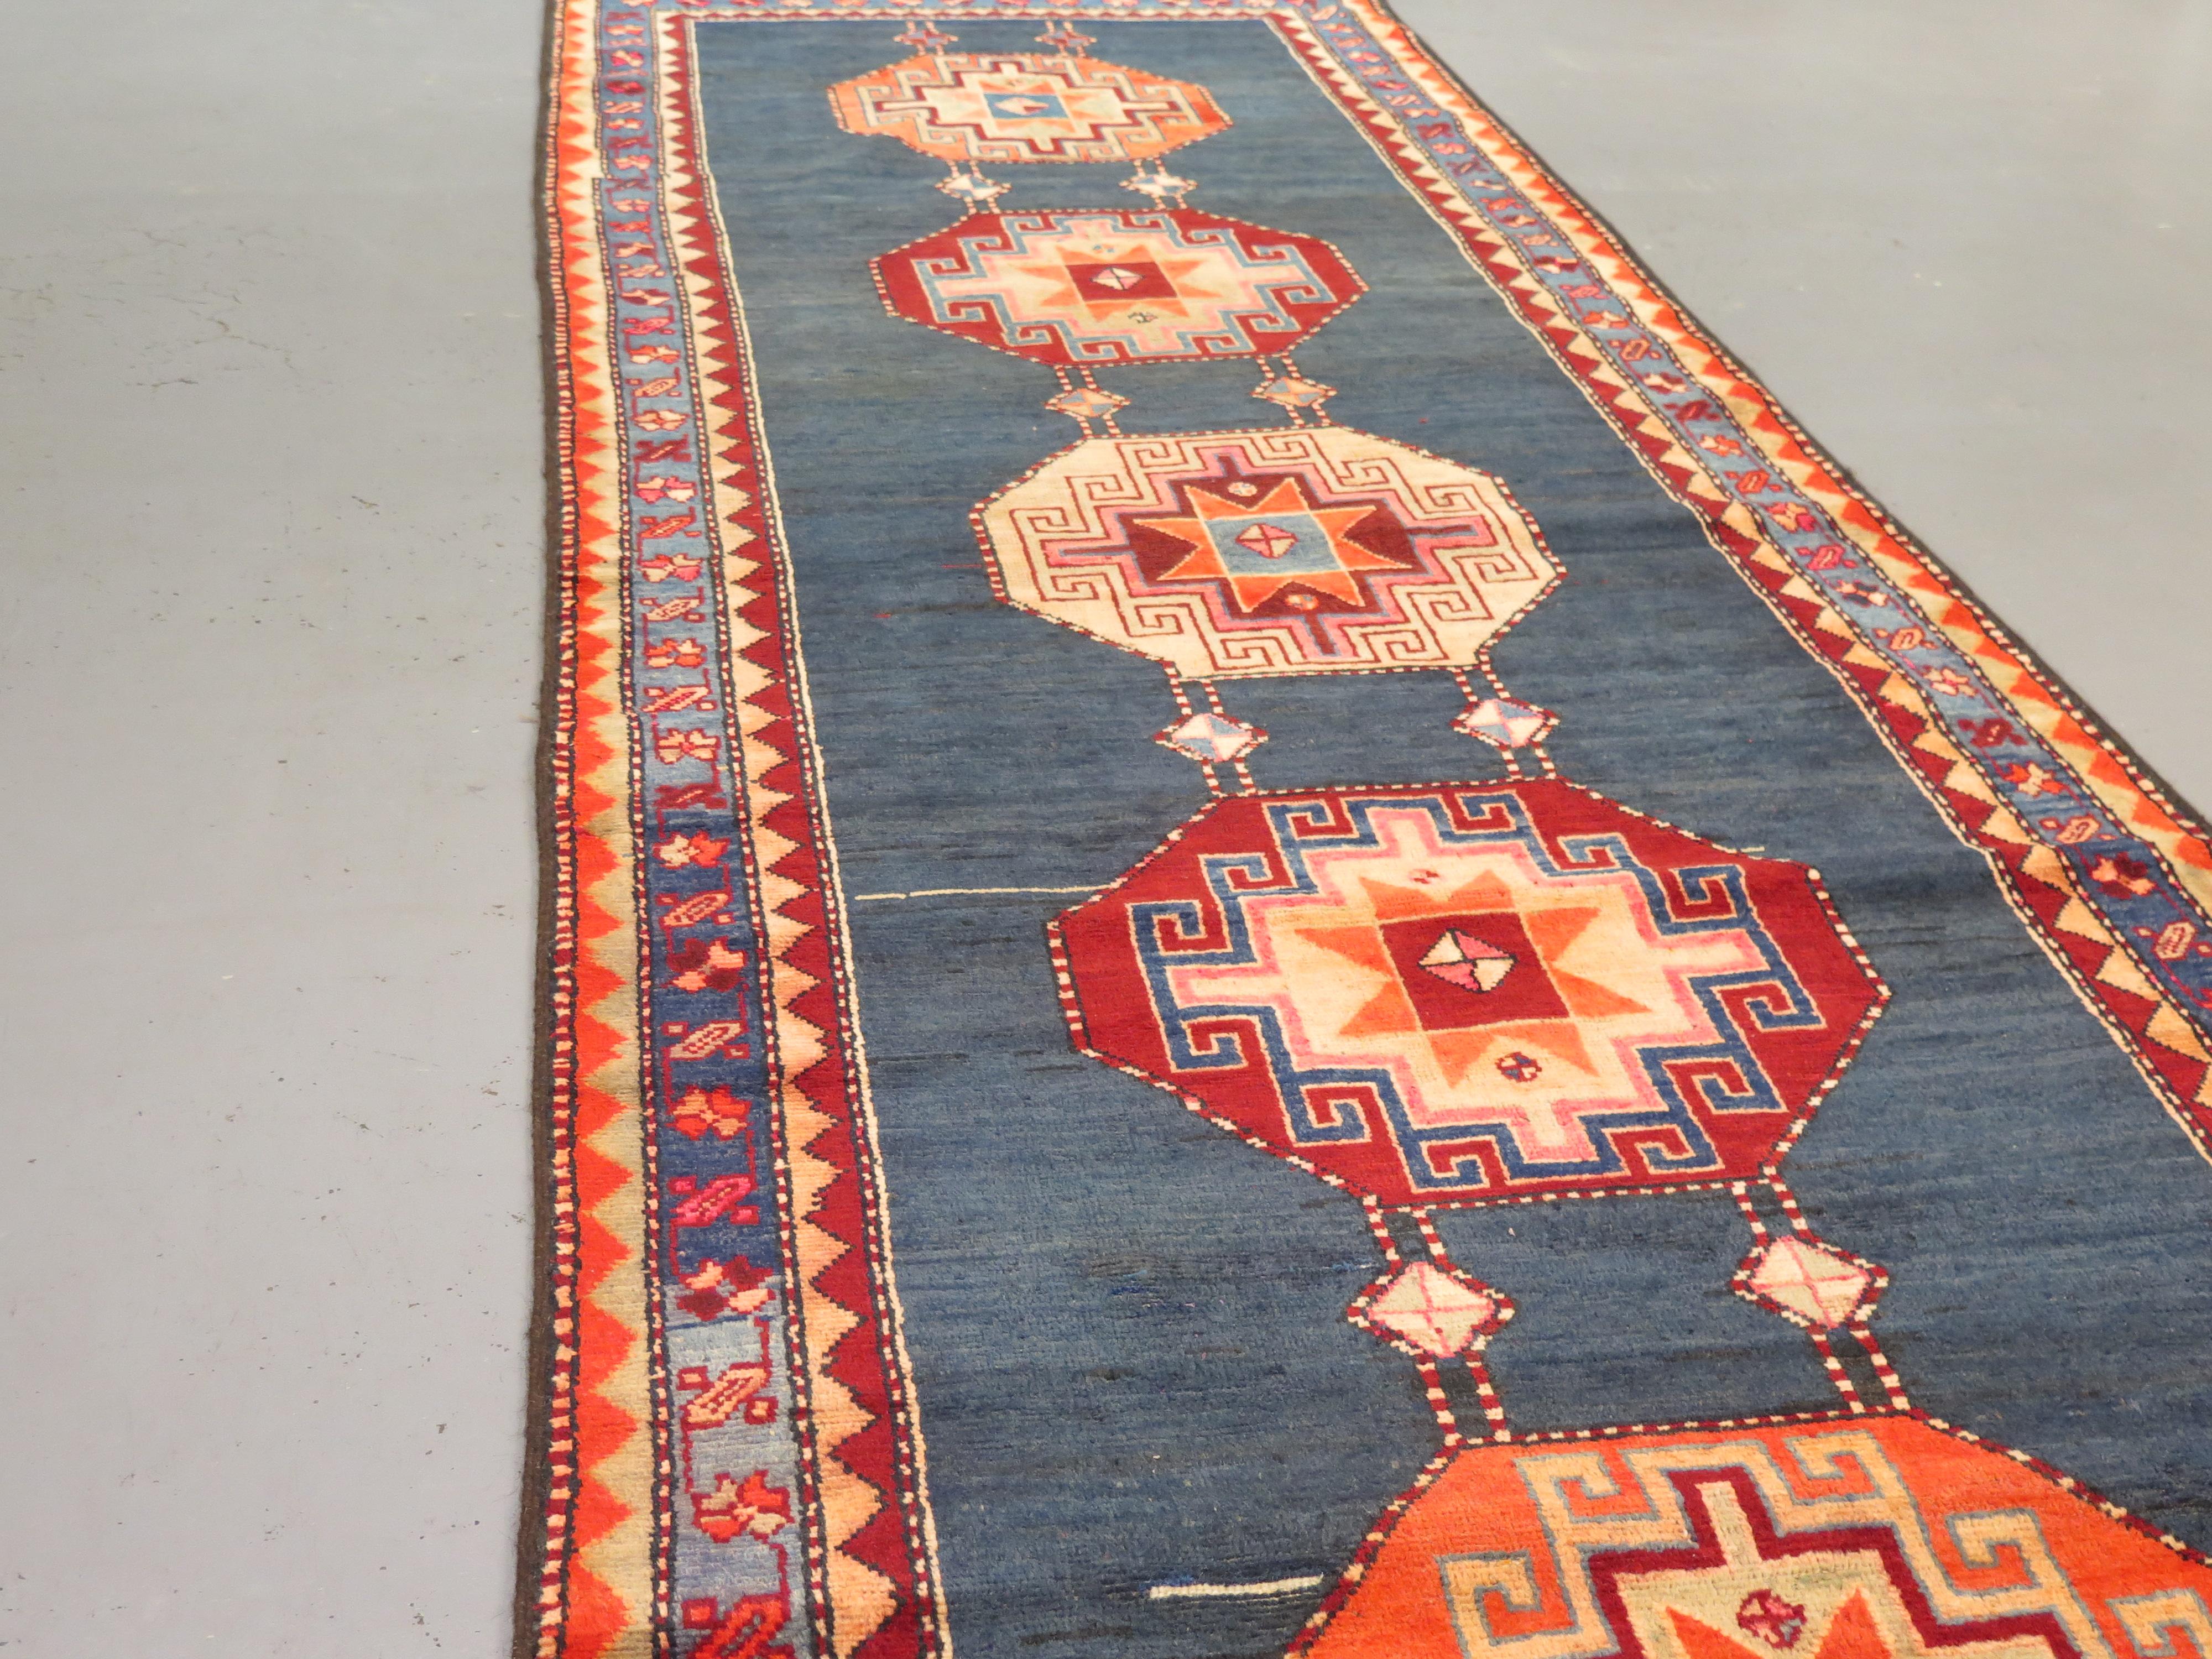 L'Azerbaïdjan a une riche histoire de tissage de tapis, qui remonte à plusieurs siècles. Le pays se trouve au carrefour de plusieurs cultures, et ses tapis le reflètent par leur créativité et leur diversité. En tant que telles, ces pièces sont très